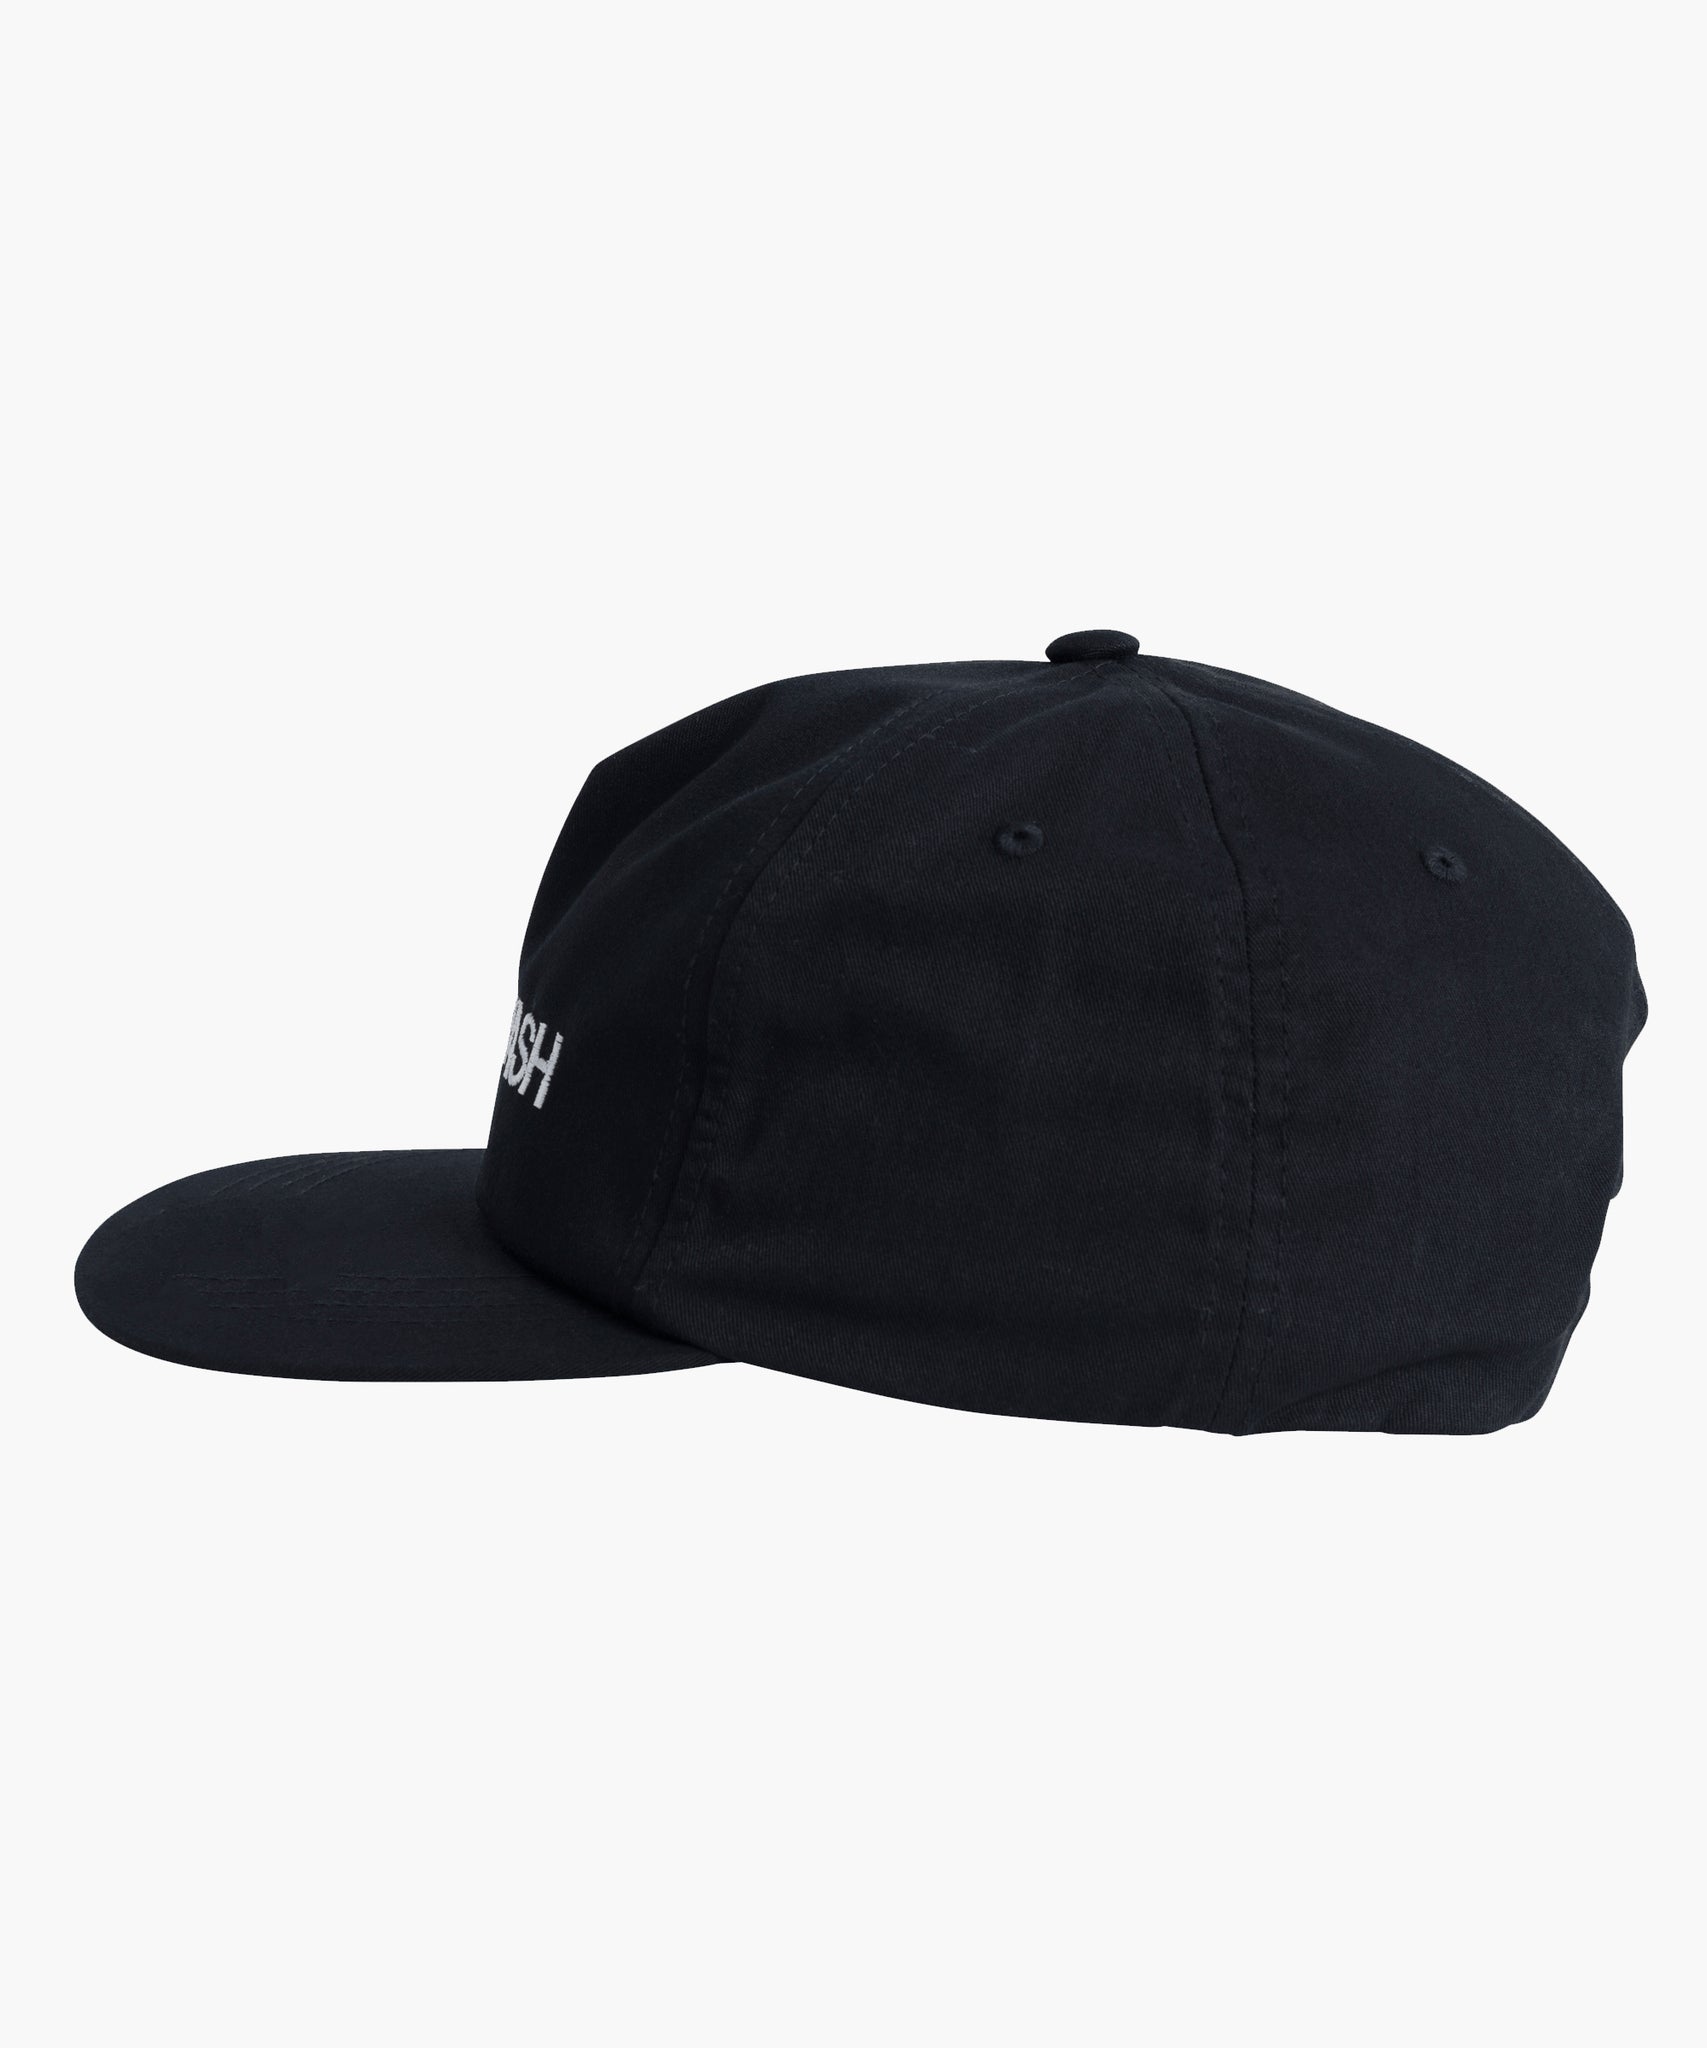 MOUTHWASH Trucker Hat - Black